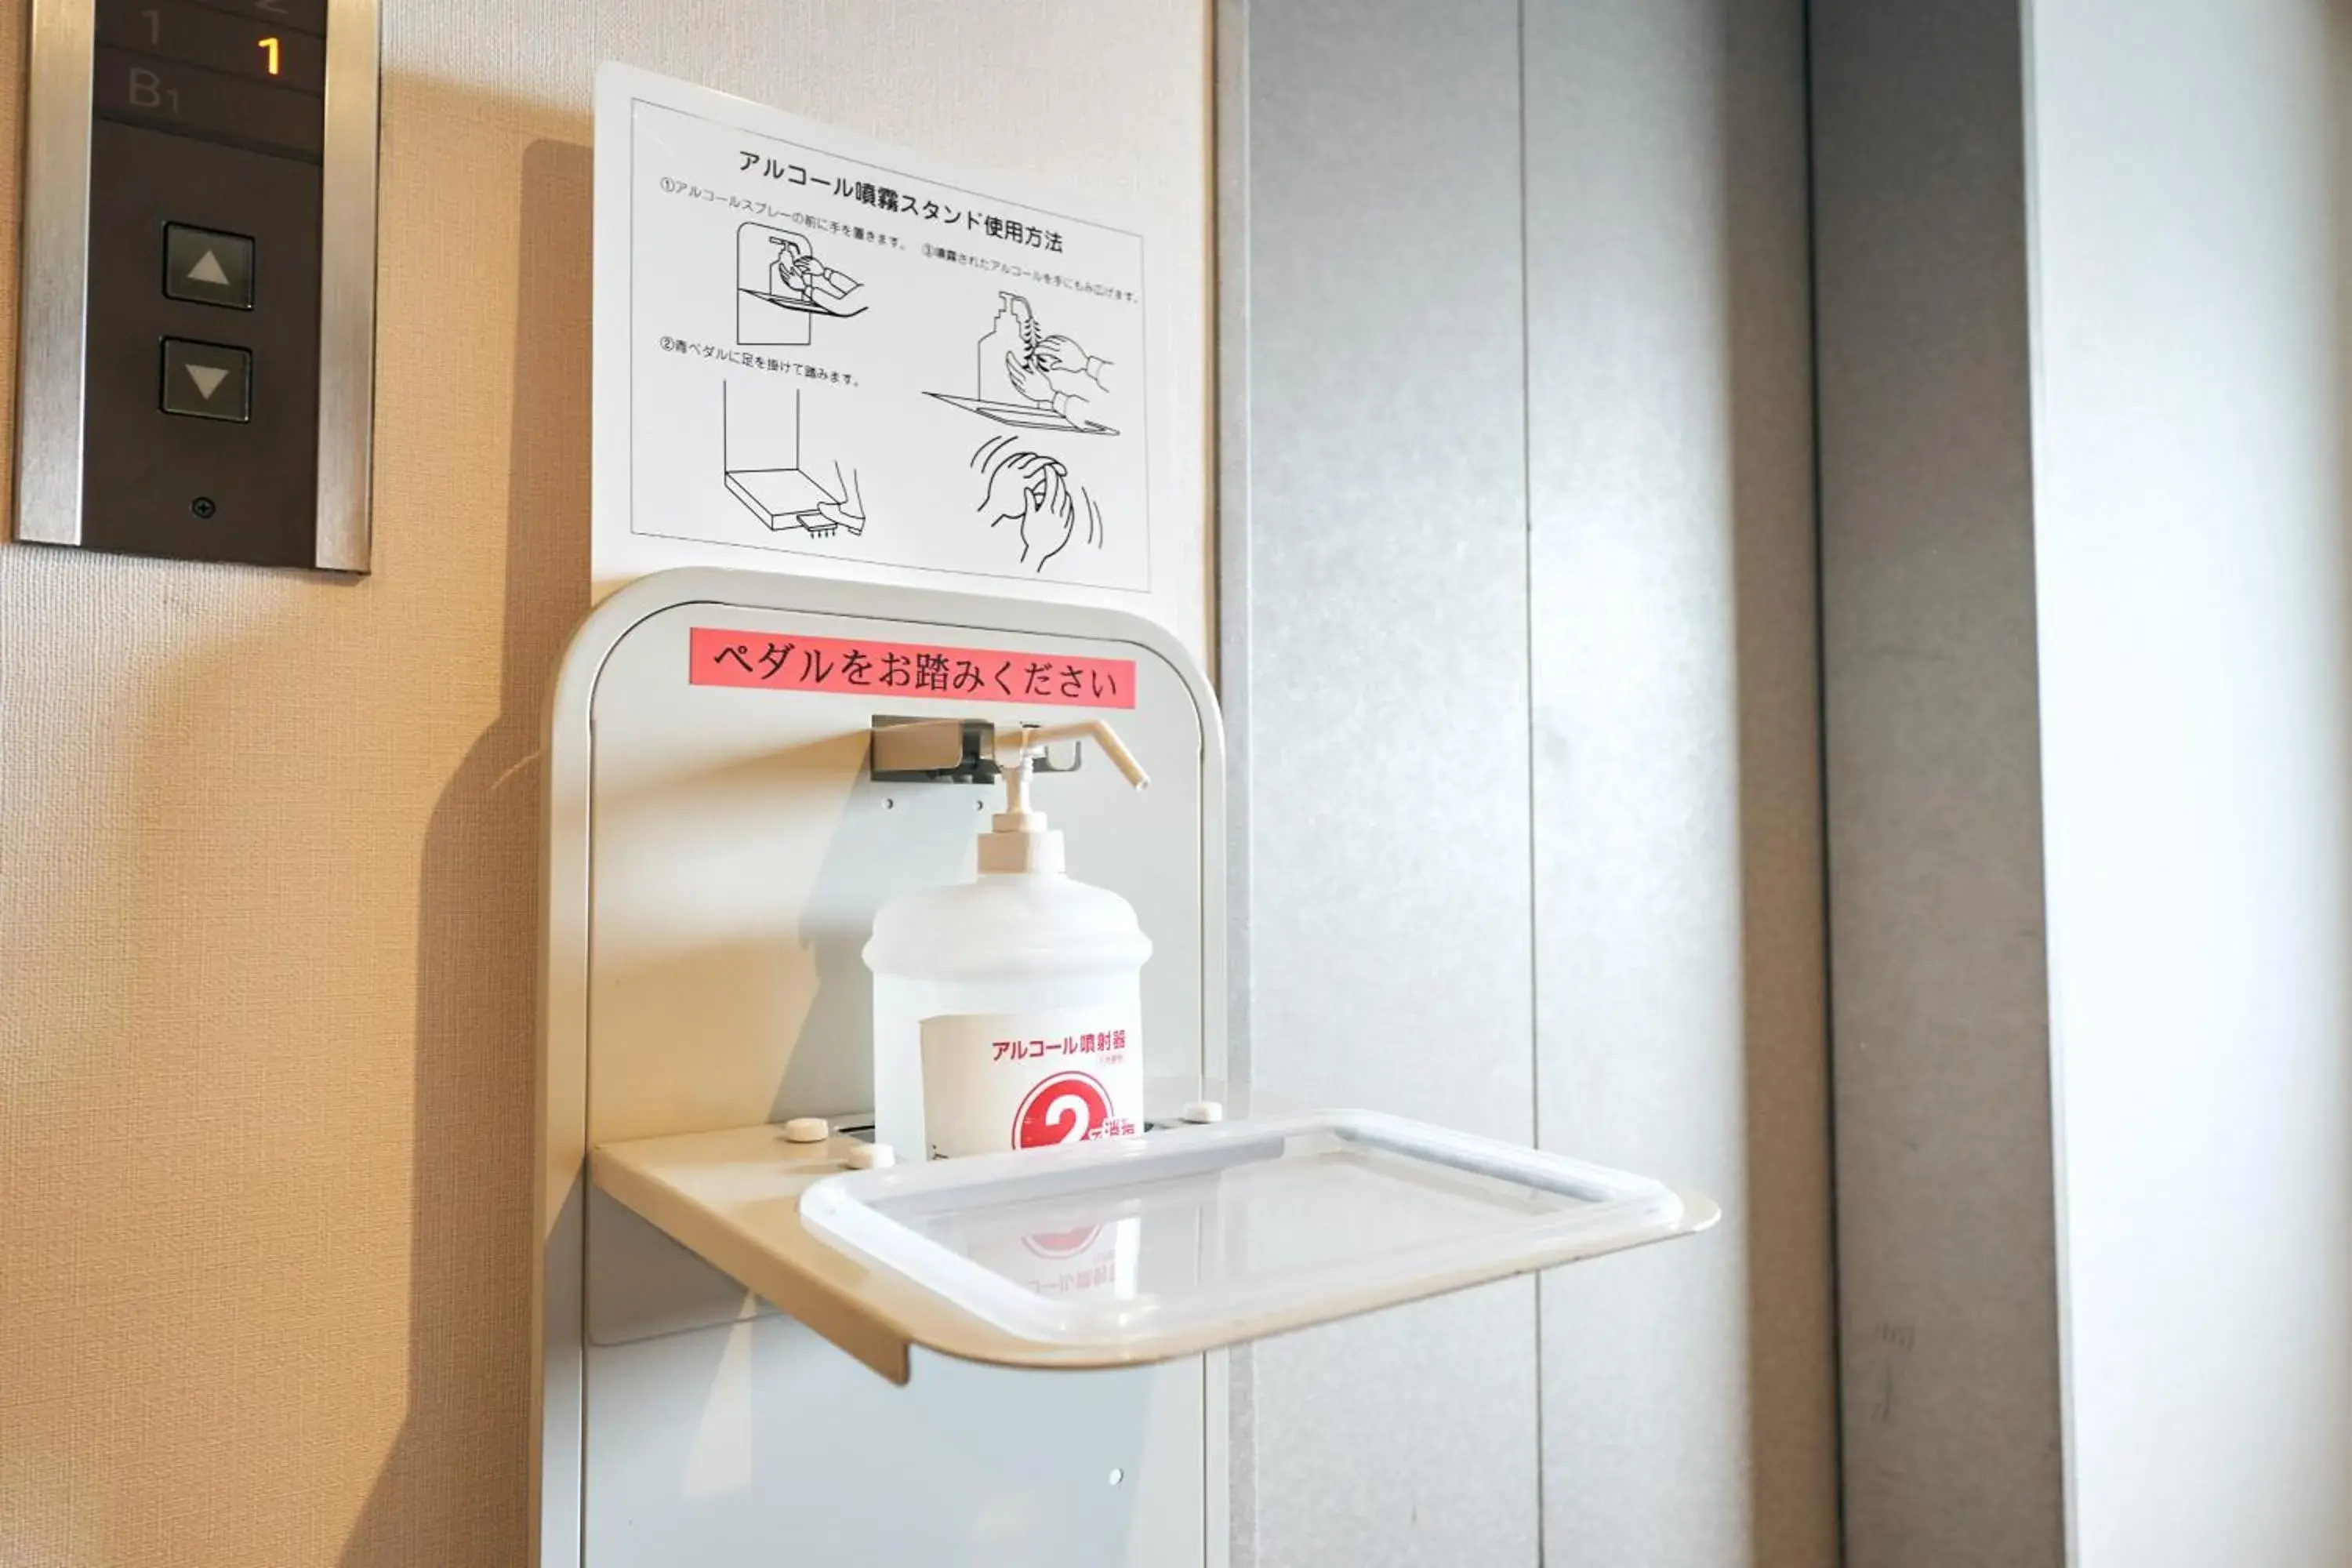 Area and facilities, Bathroom in Kyoto Daiichi Hotel